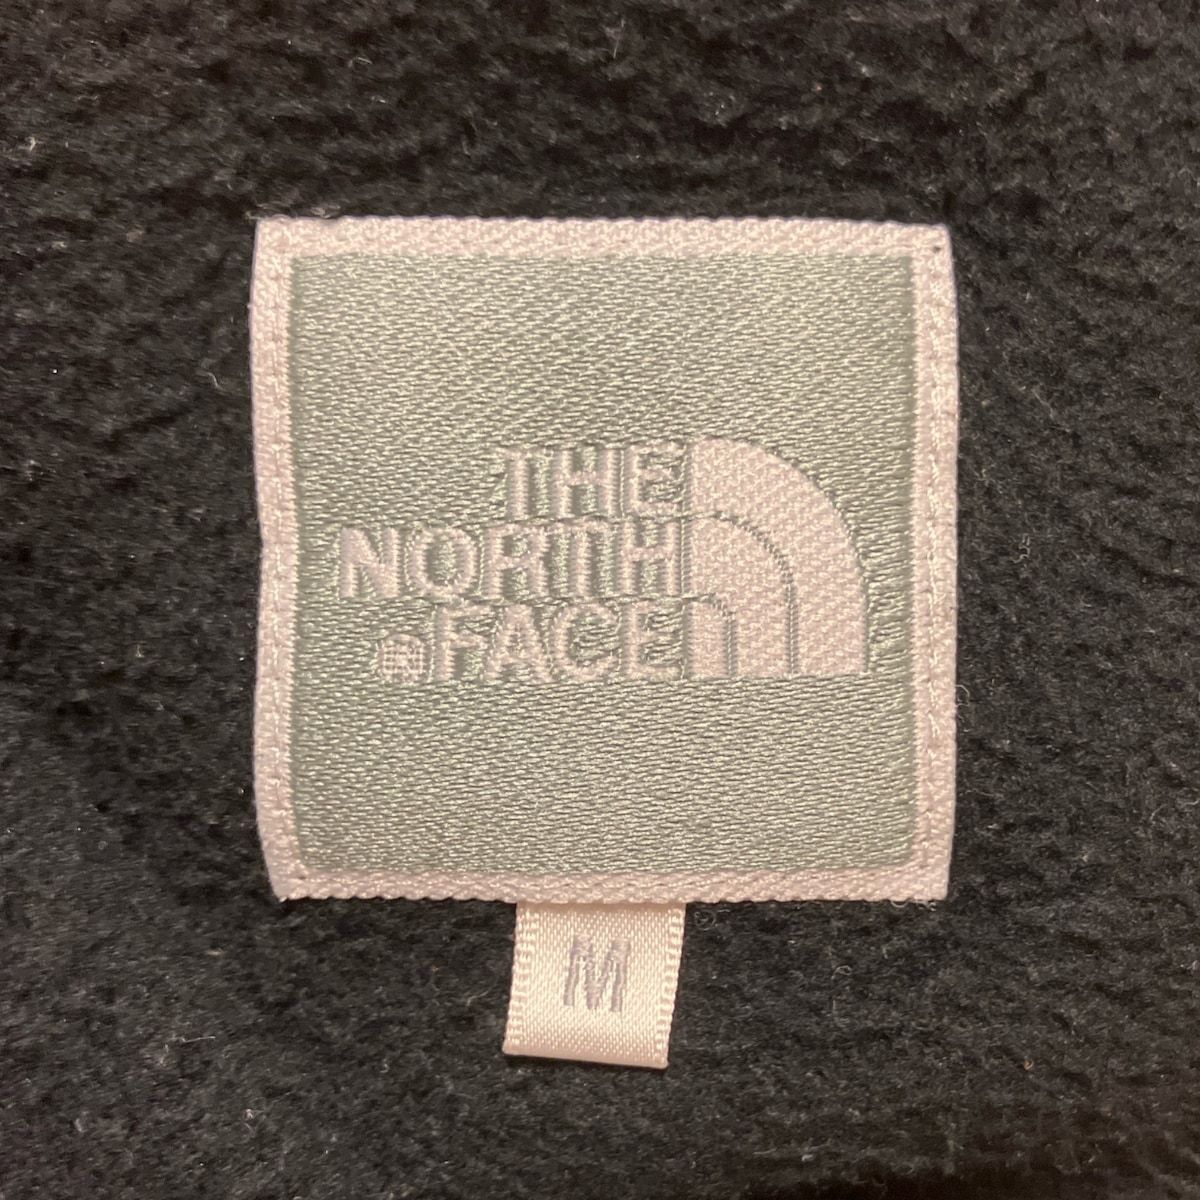 THE NORTH FACE(ノースフェイス) パンツ サイズM レディース - 黒 